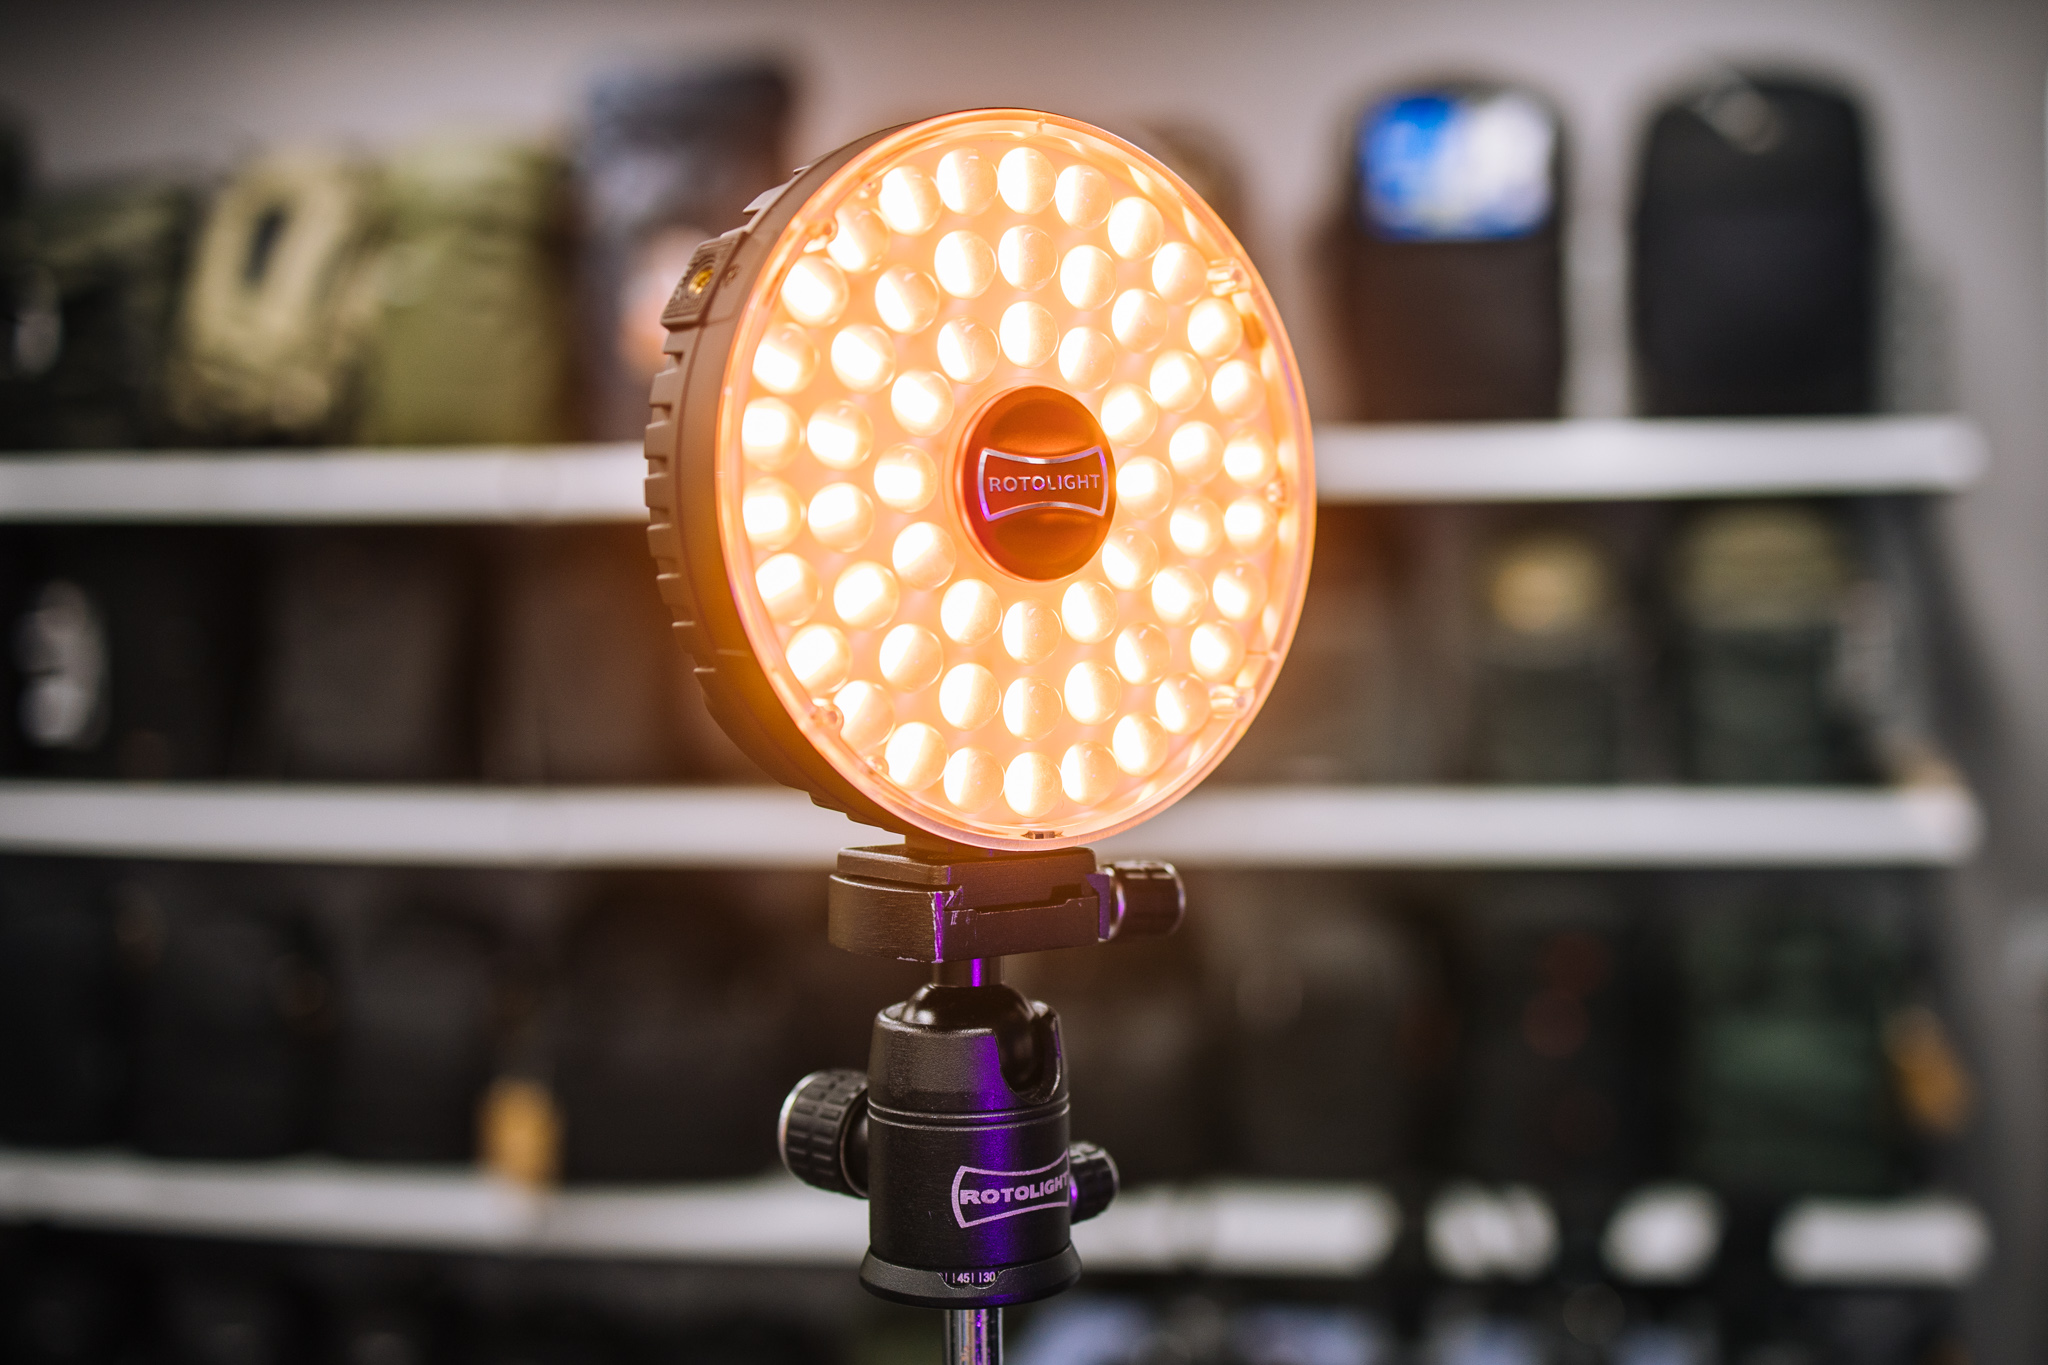 Lampa LED Rotolight Neo 3 oferuje 16,7 miliona kolorów i 2500 filtrów cyfrowych znanych z oferty firm LEE i Rosco.